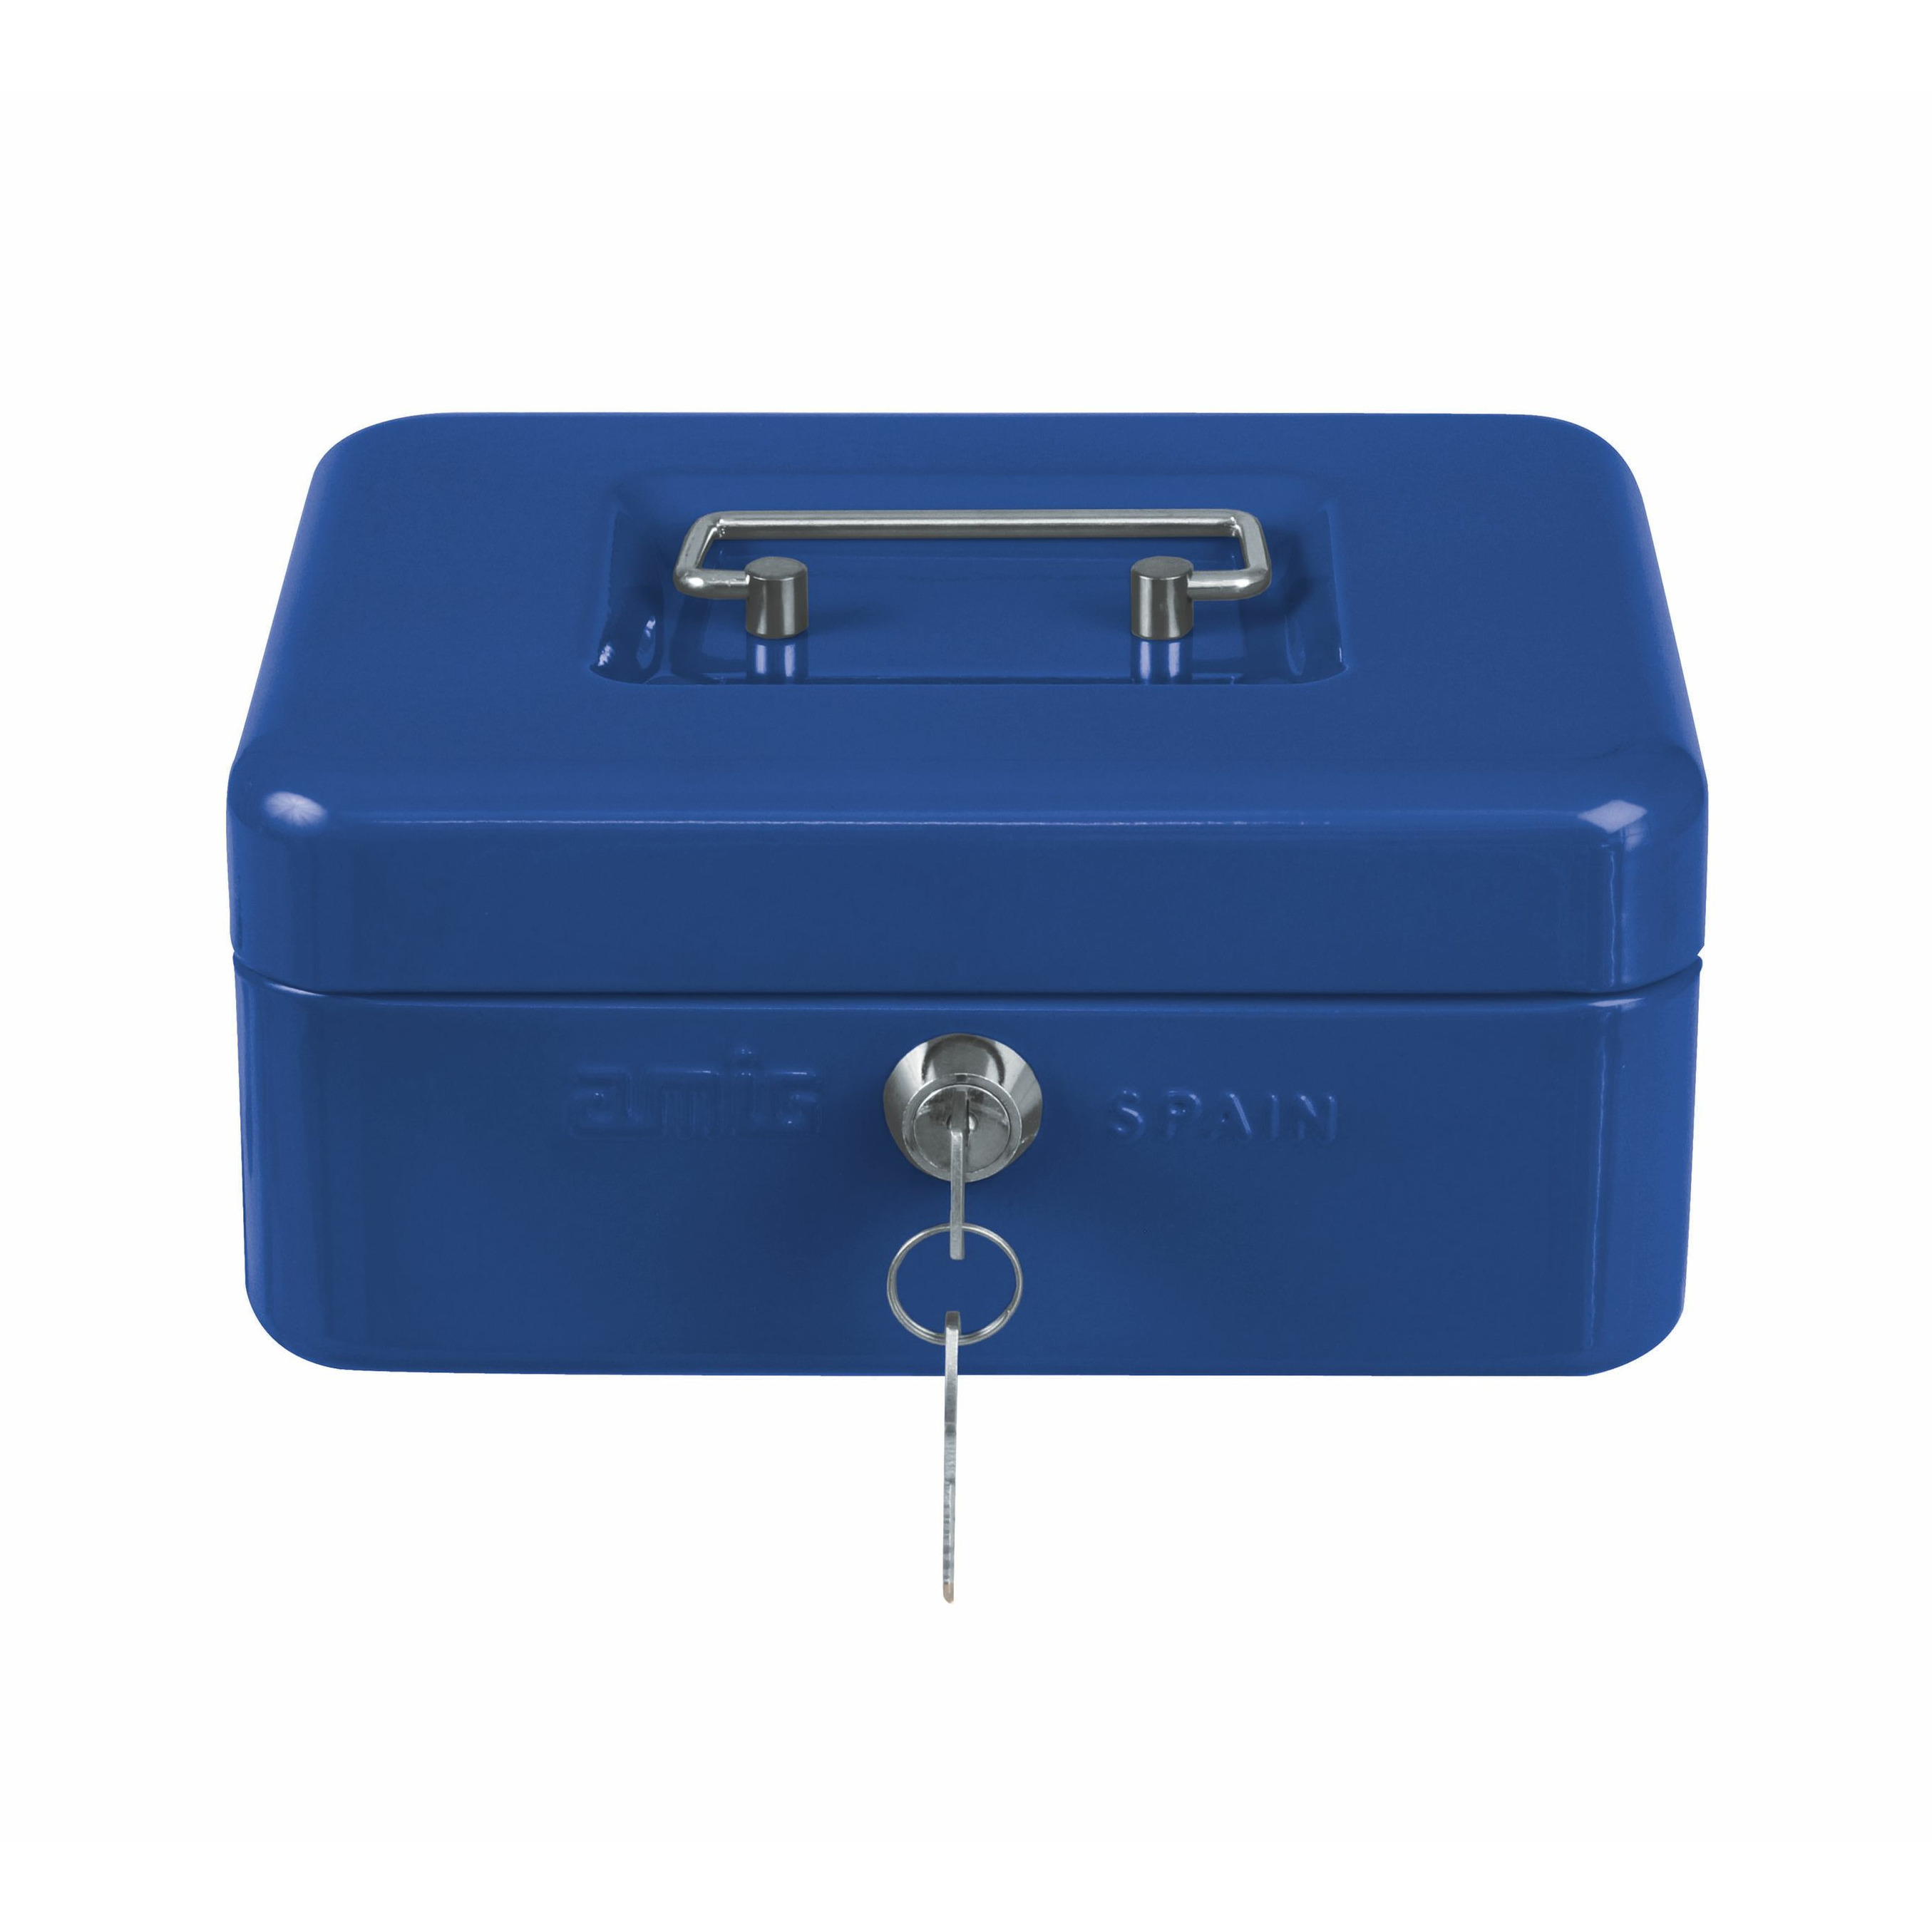 AMIG Geldkistje met 2 sleutels blauw staal 25 x 18 x 9 cm inbraakbeveiliging